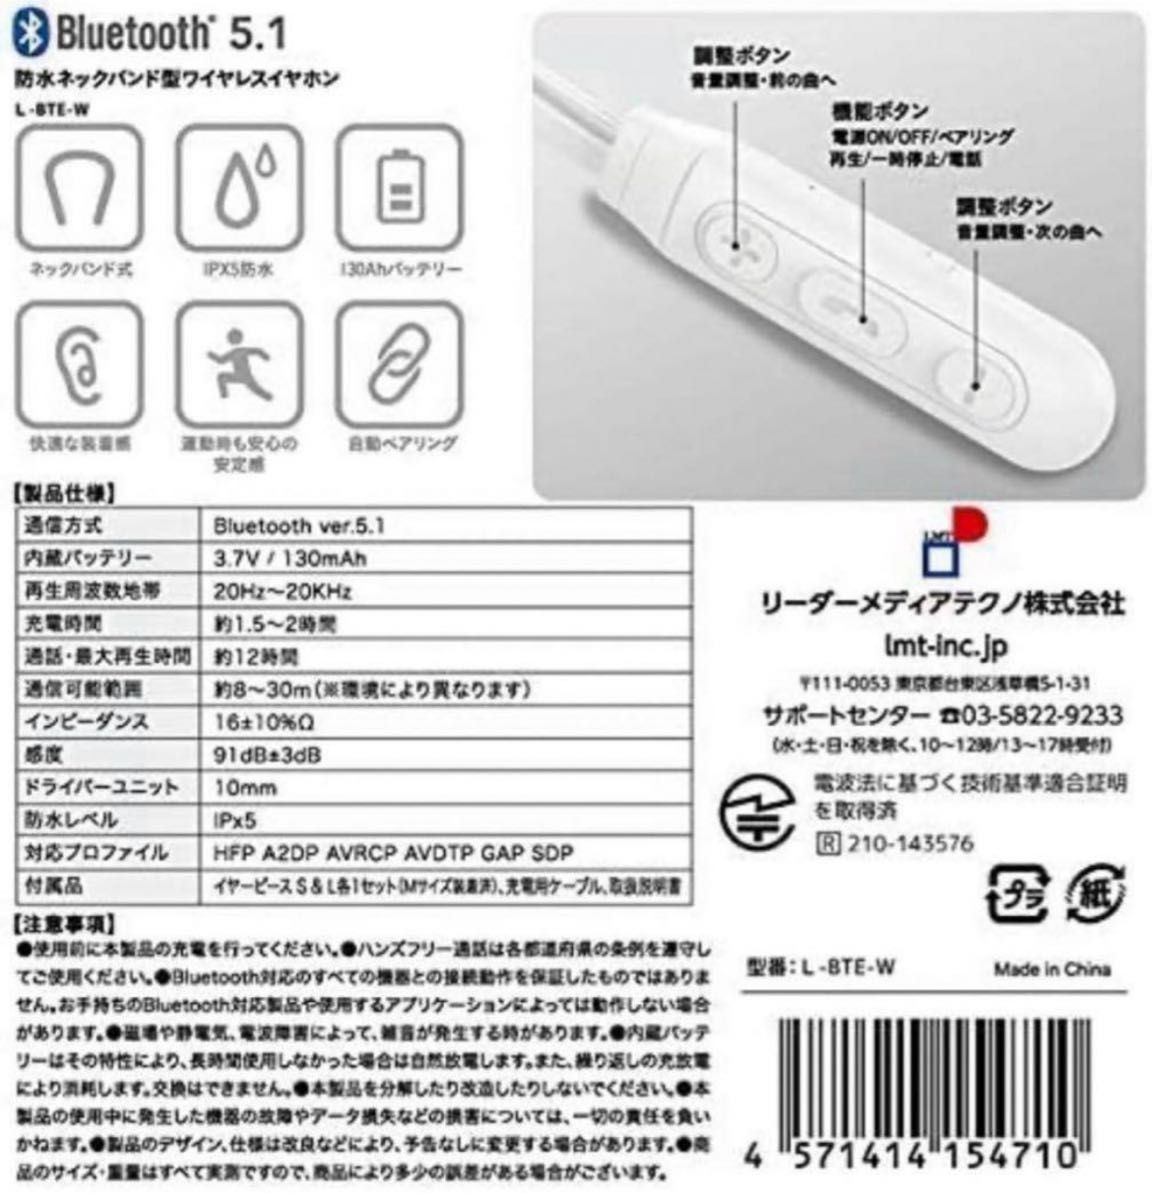 Lazos ネックバンド型 ワイヤレスイヤホン Bluetooth 5.1 防水 IPx5